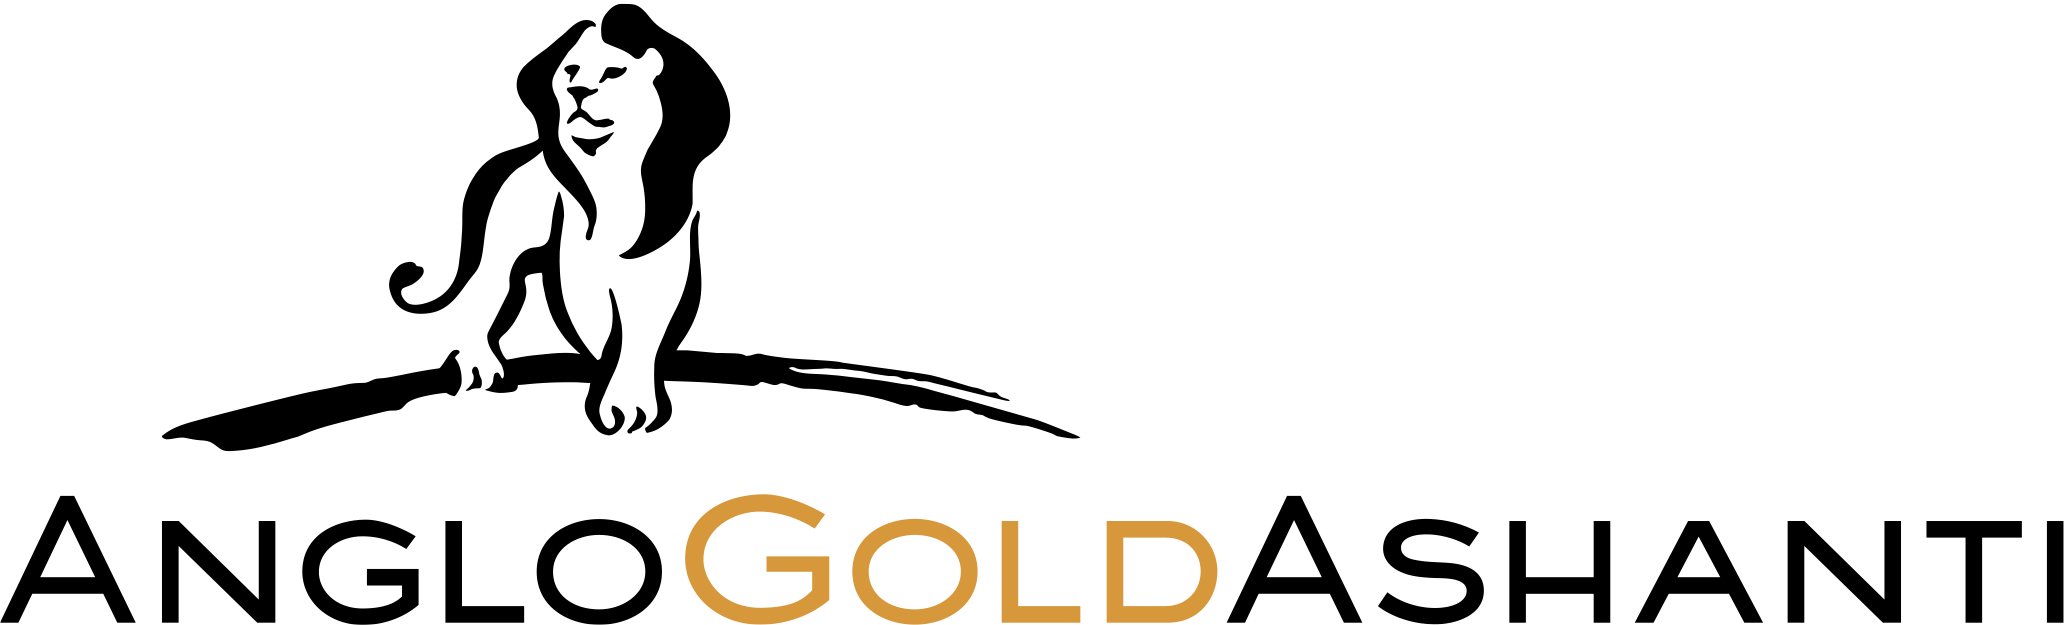 AngloGold Ashanti Brand Logo